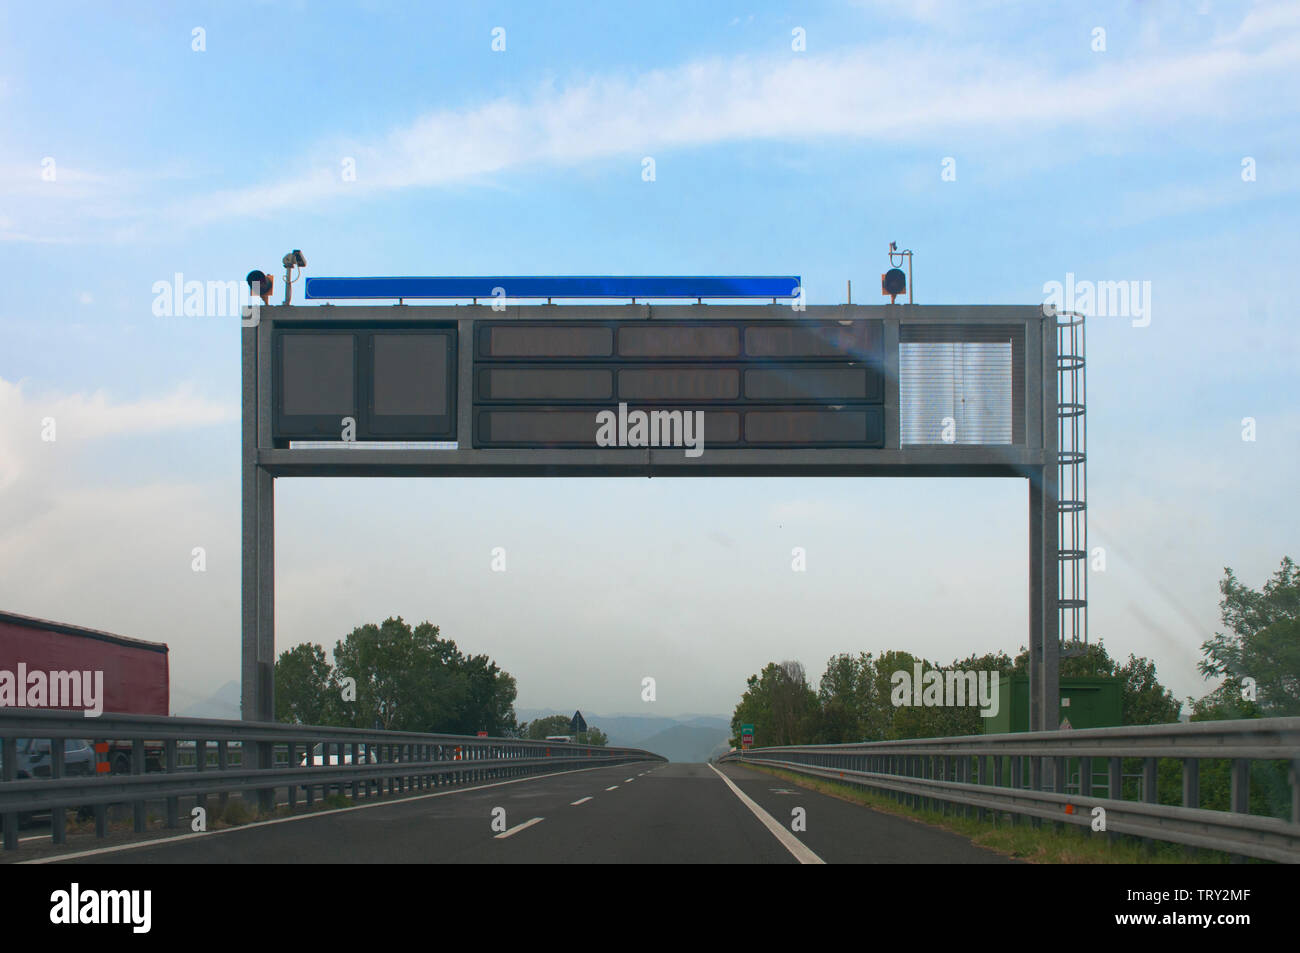 Blank segnapunti elettronici per informazioni su traffico e meteo su una autostrada italiana Foto Stock